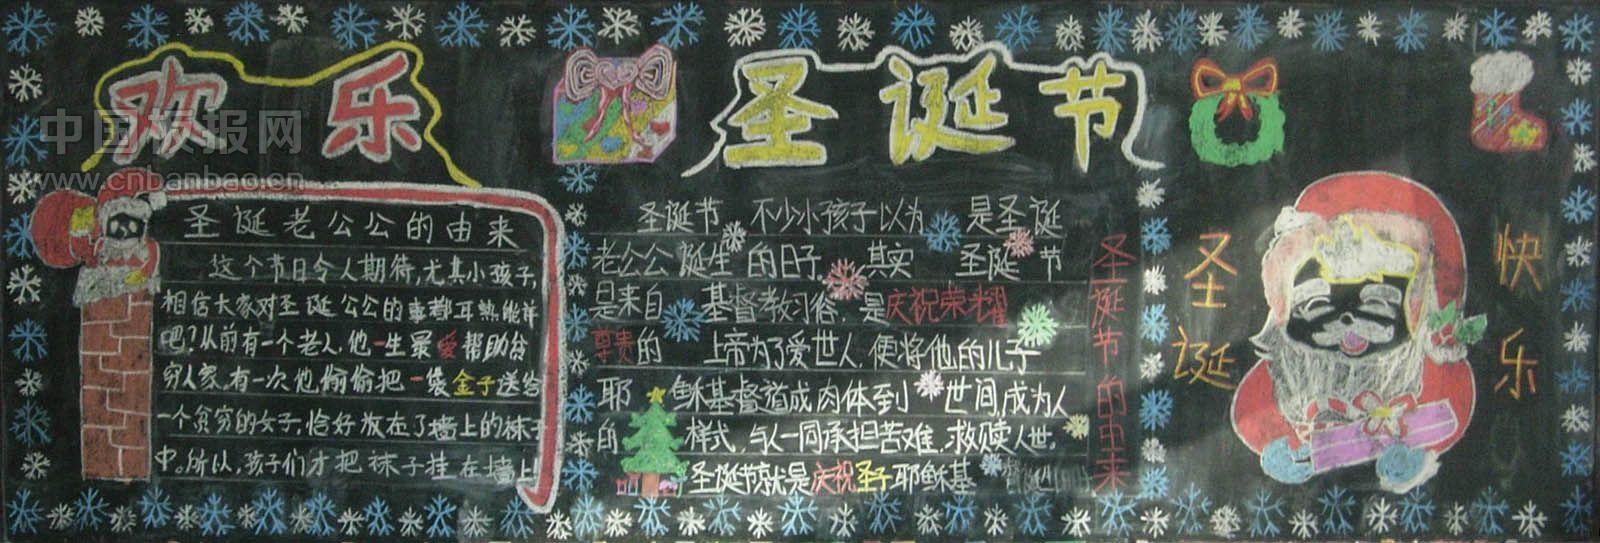 欢乐圣诞节黑板报版面图